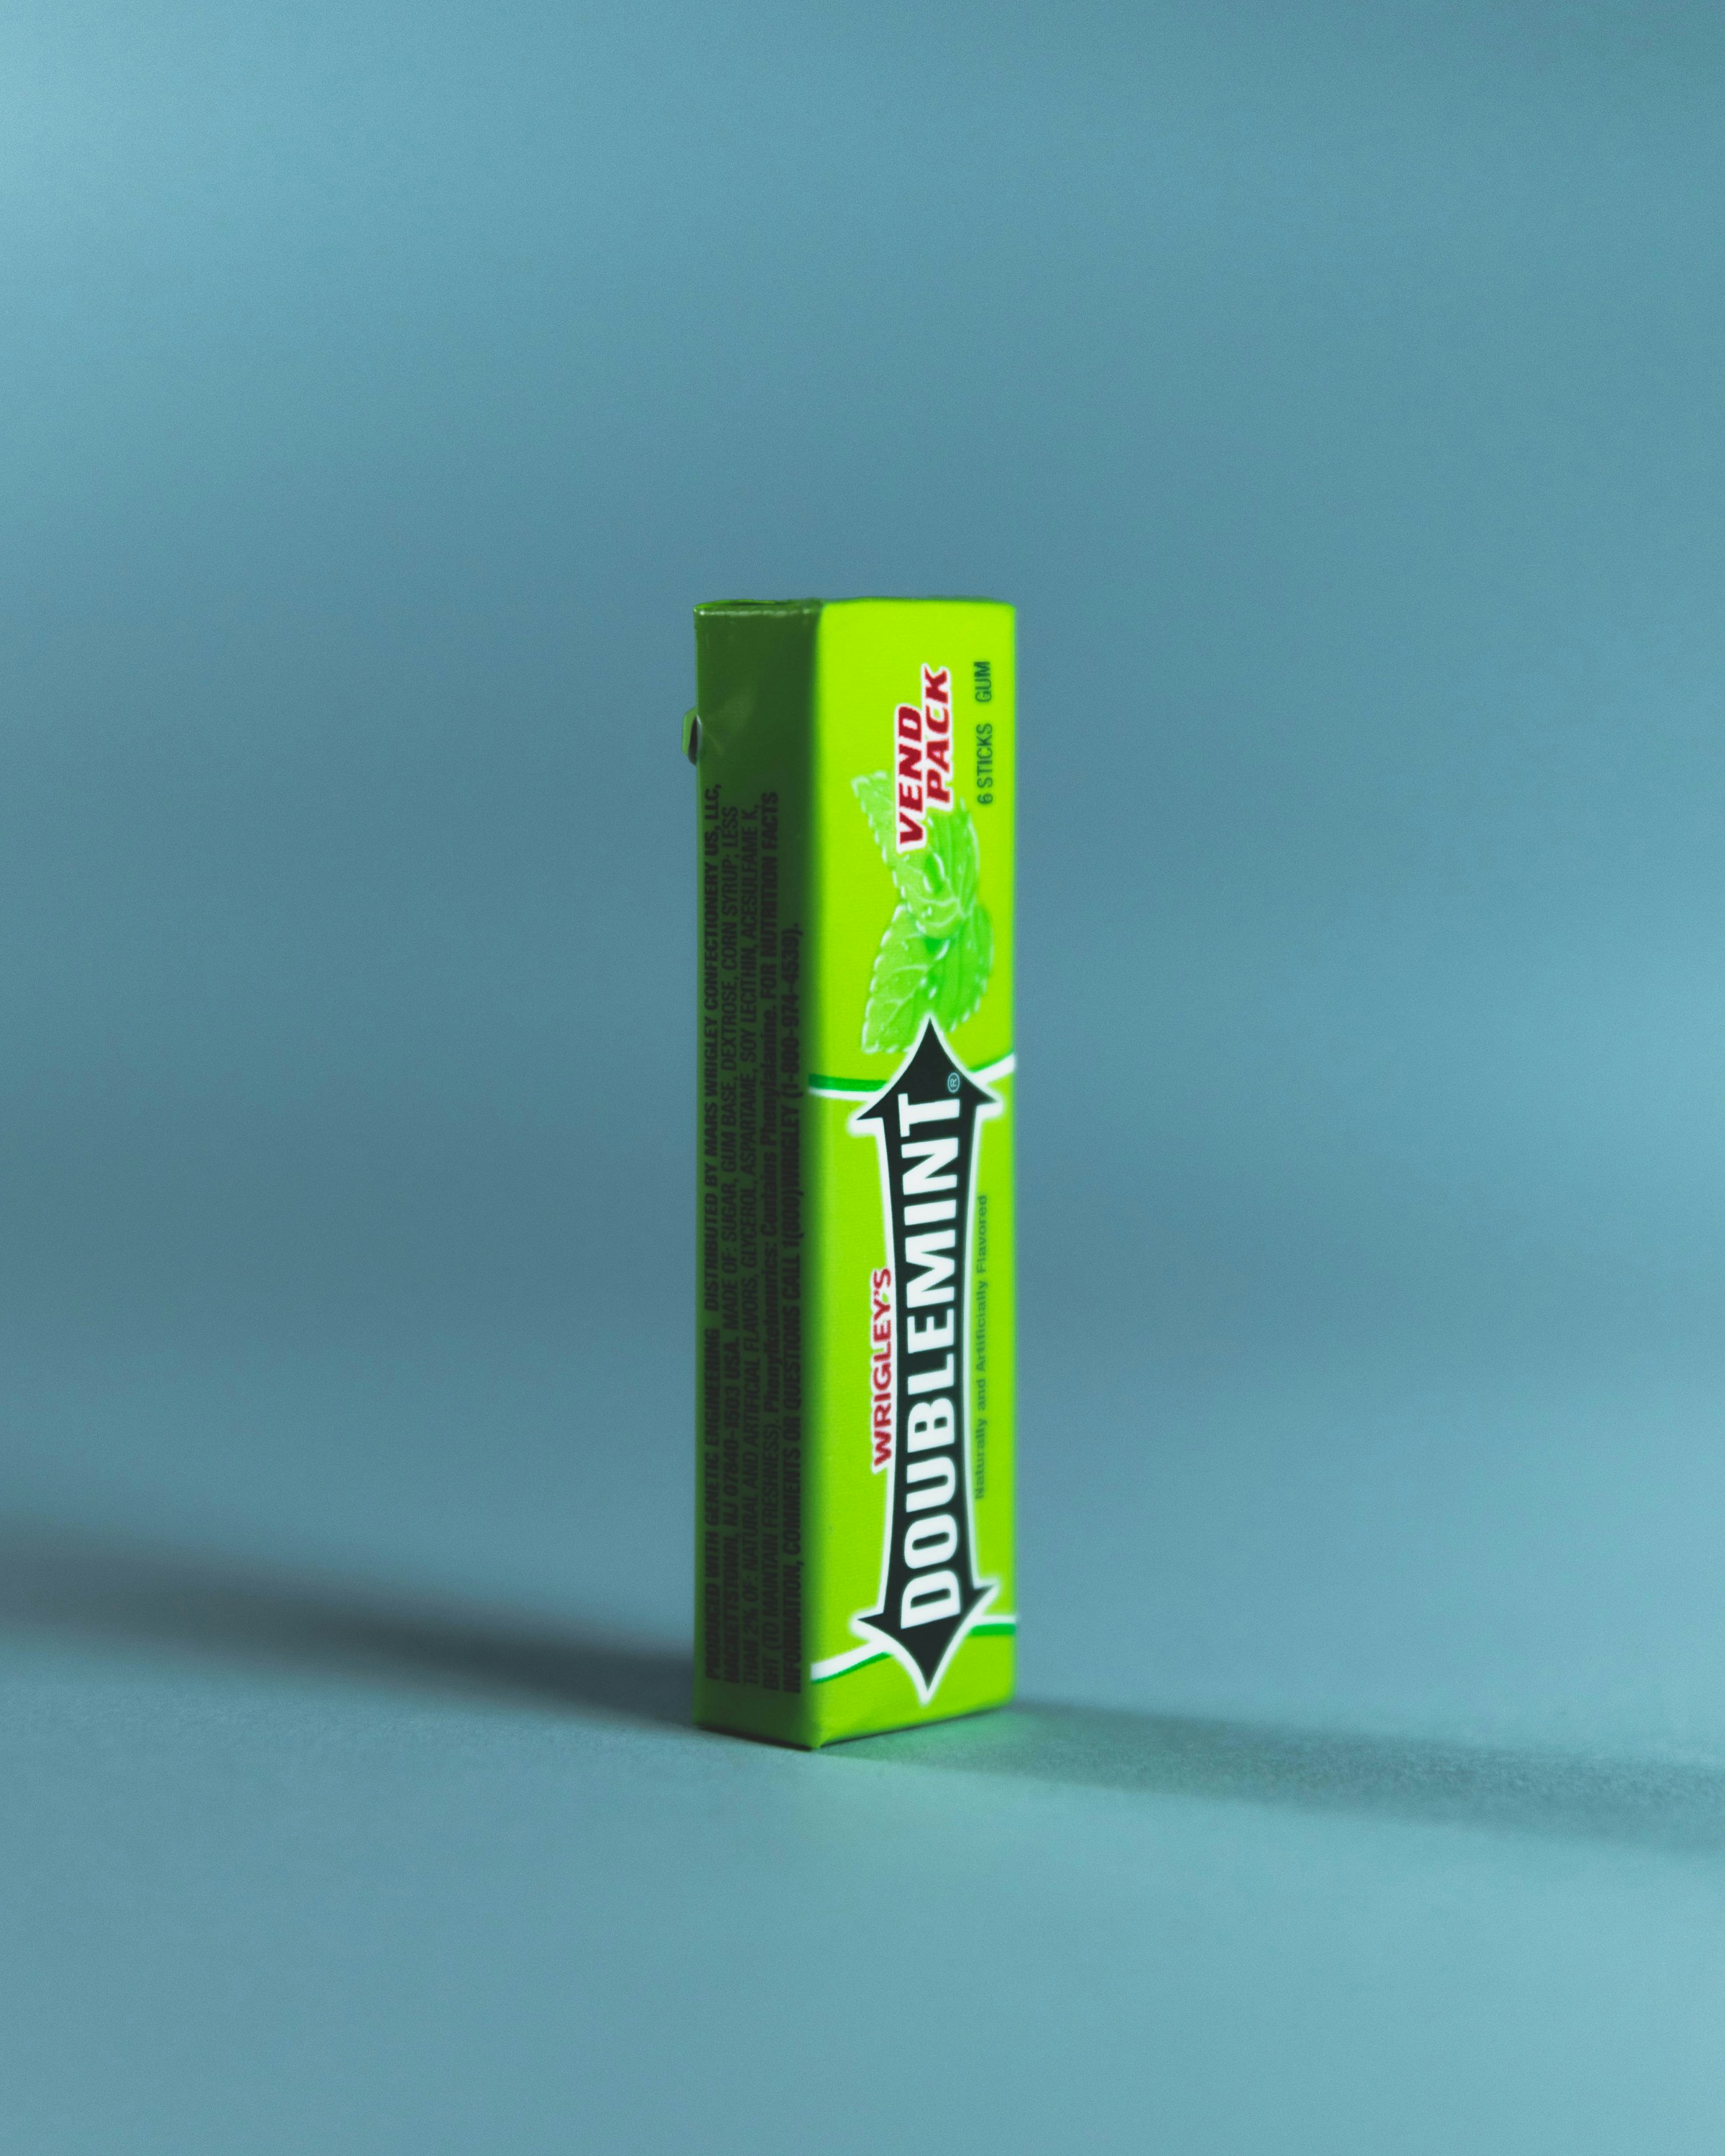 Un paquet de chewing-gum | Source : Unsplash